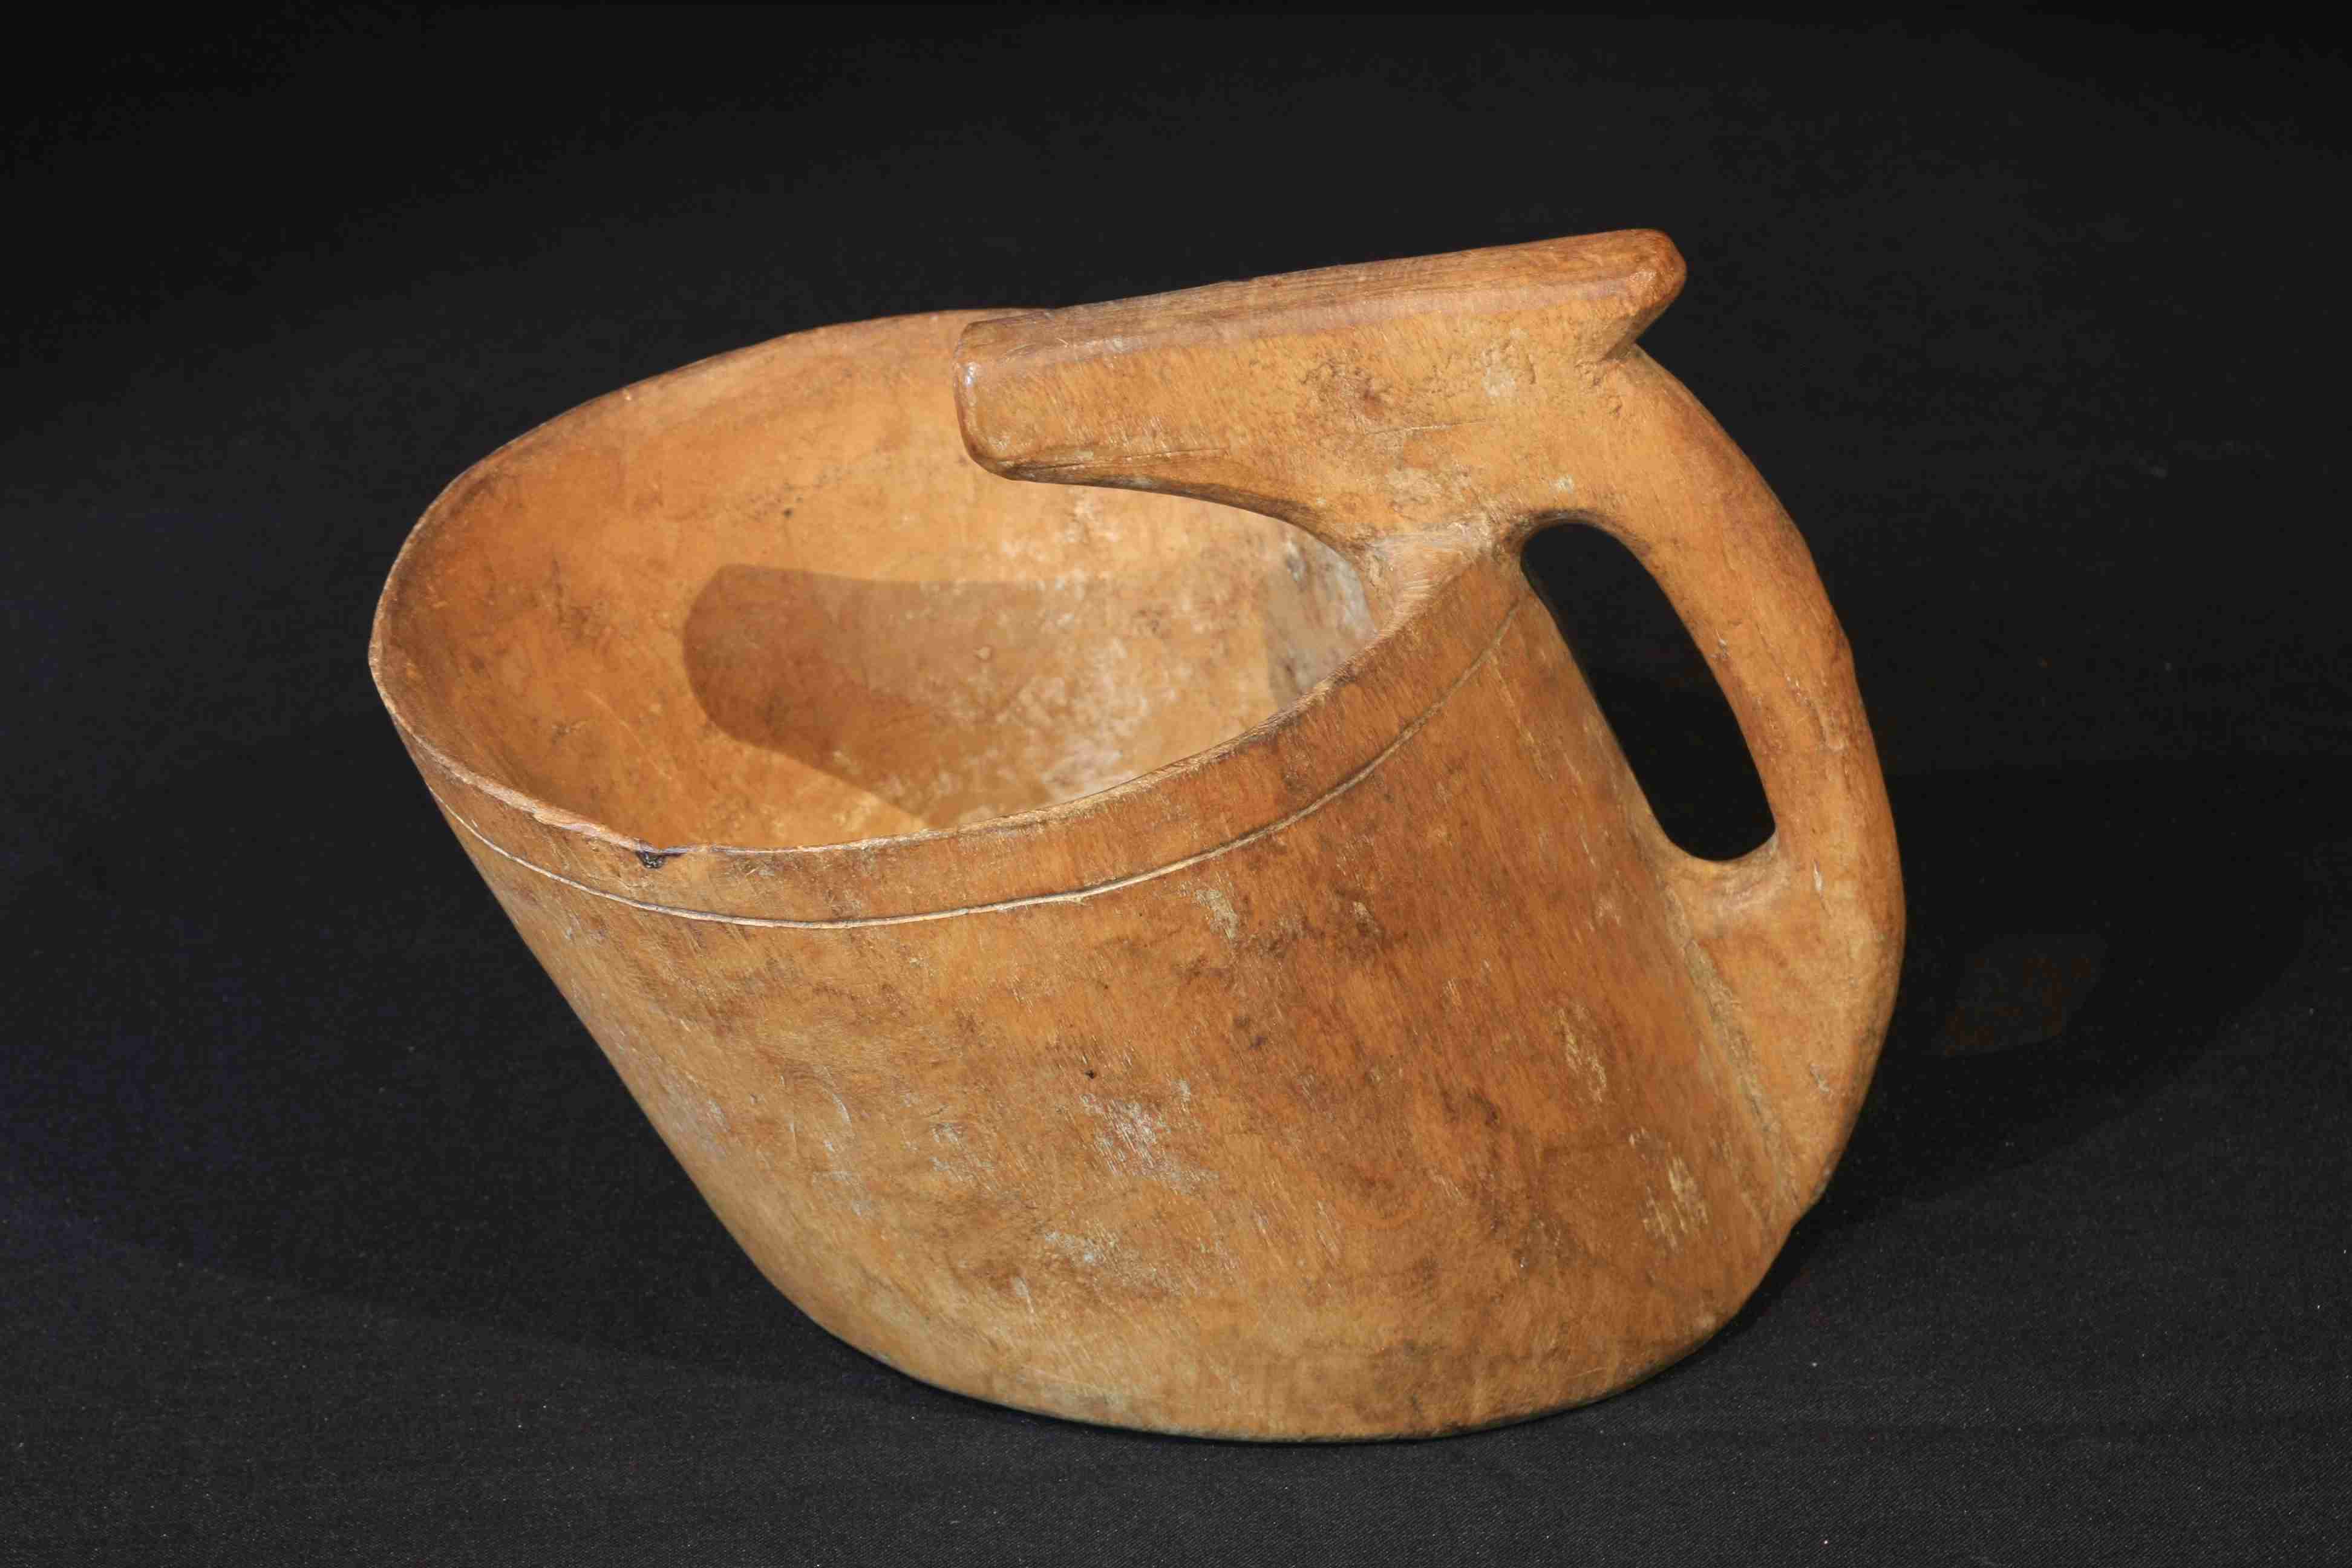 El kaiku, recipiente para ordeñar ovejas y hervir la leche con piedras rusientes, objetos emblemático de la etnografía vasca